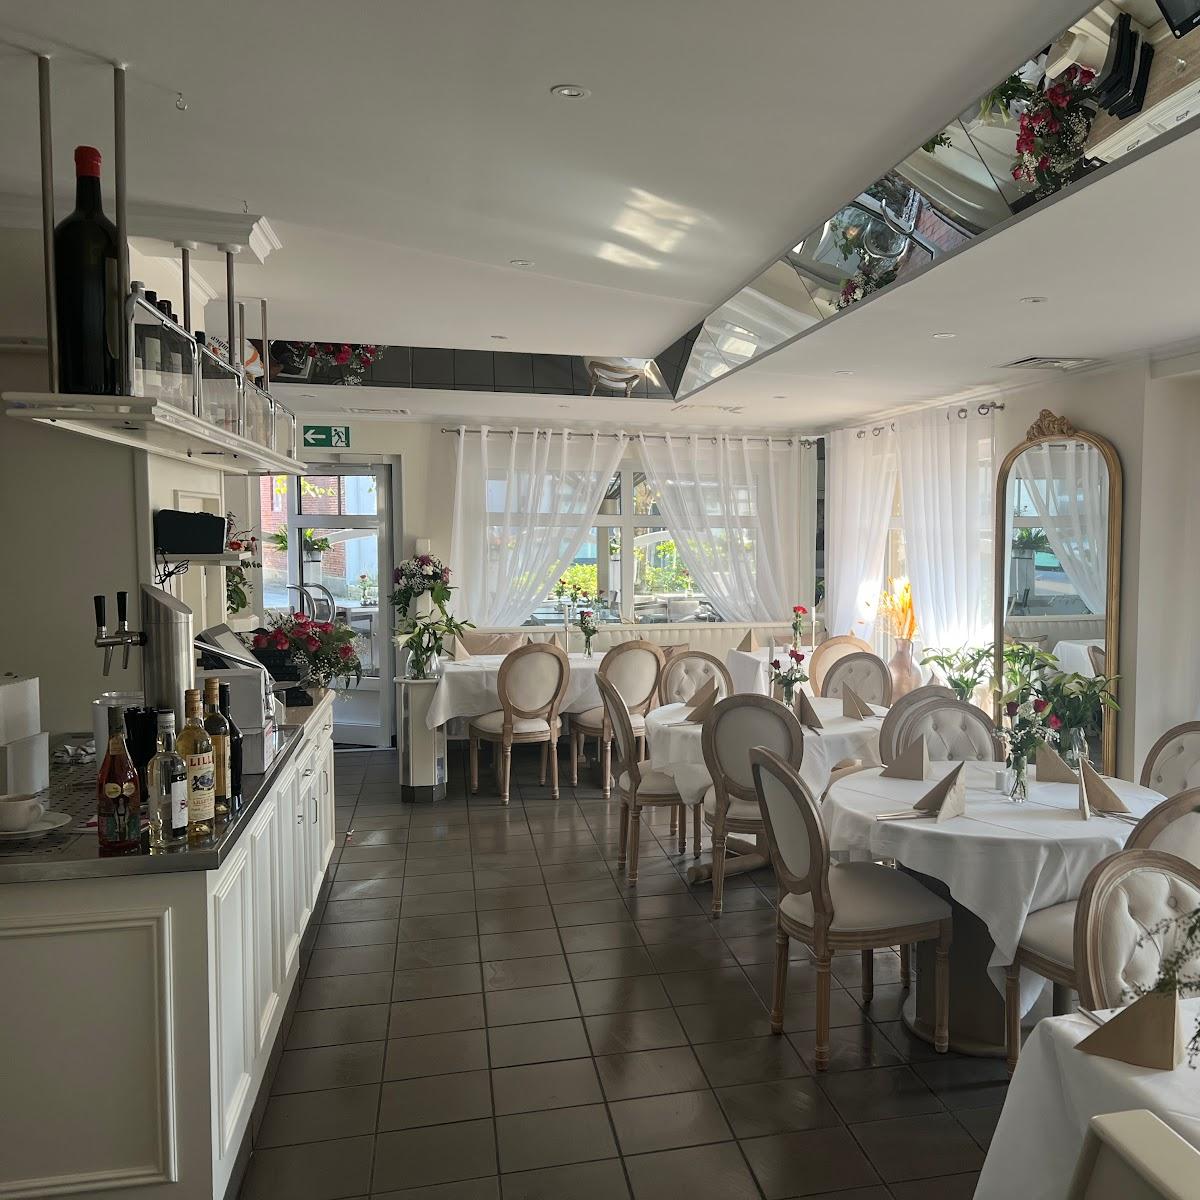 Restaurant "Aram Restaurant" in Sylt